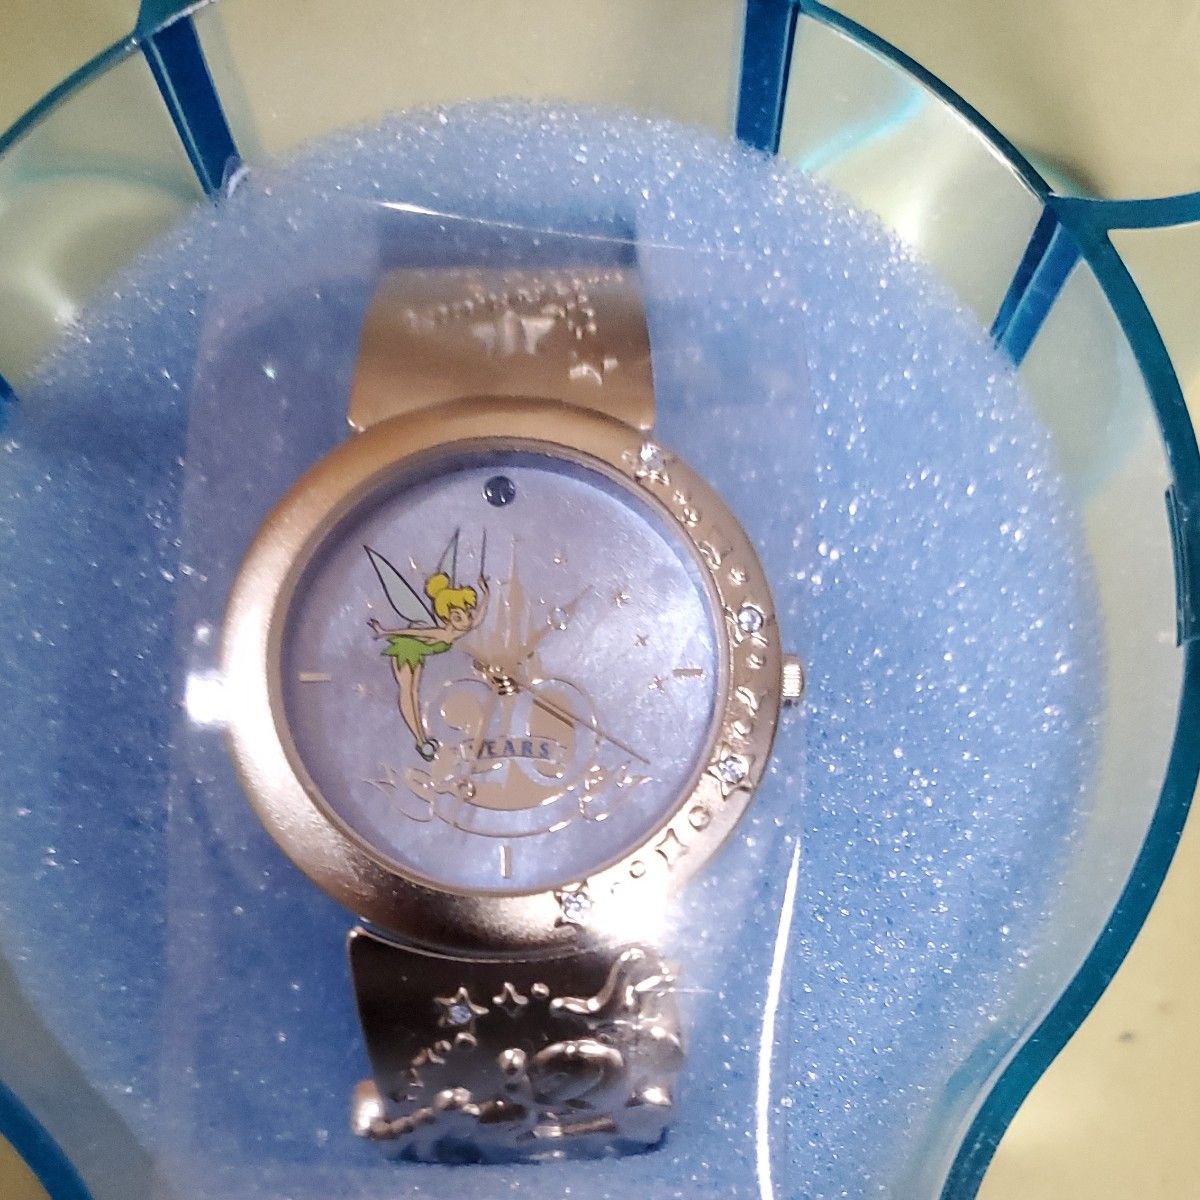 【未使用品】東京ディズニーランド 20周年記念 腕時計 ティンカーベル